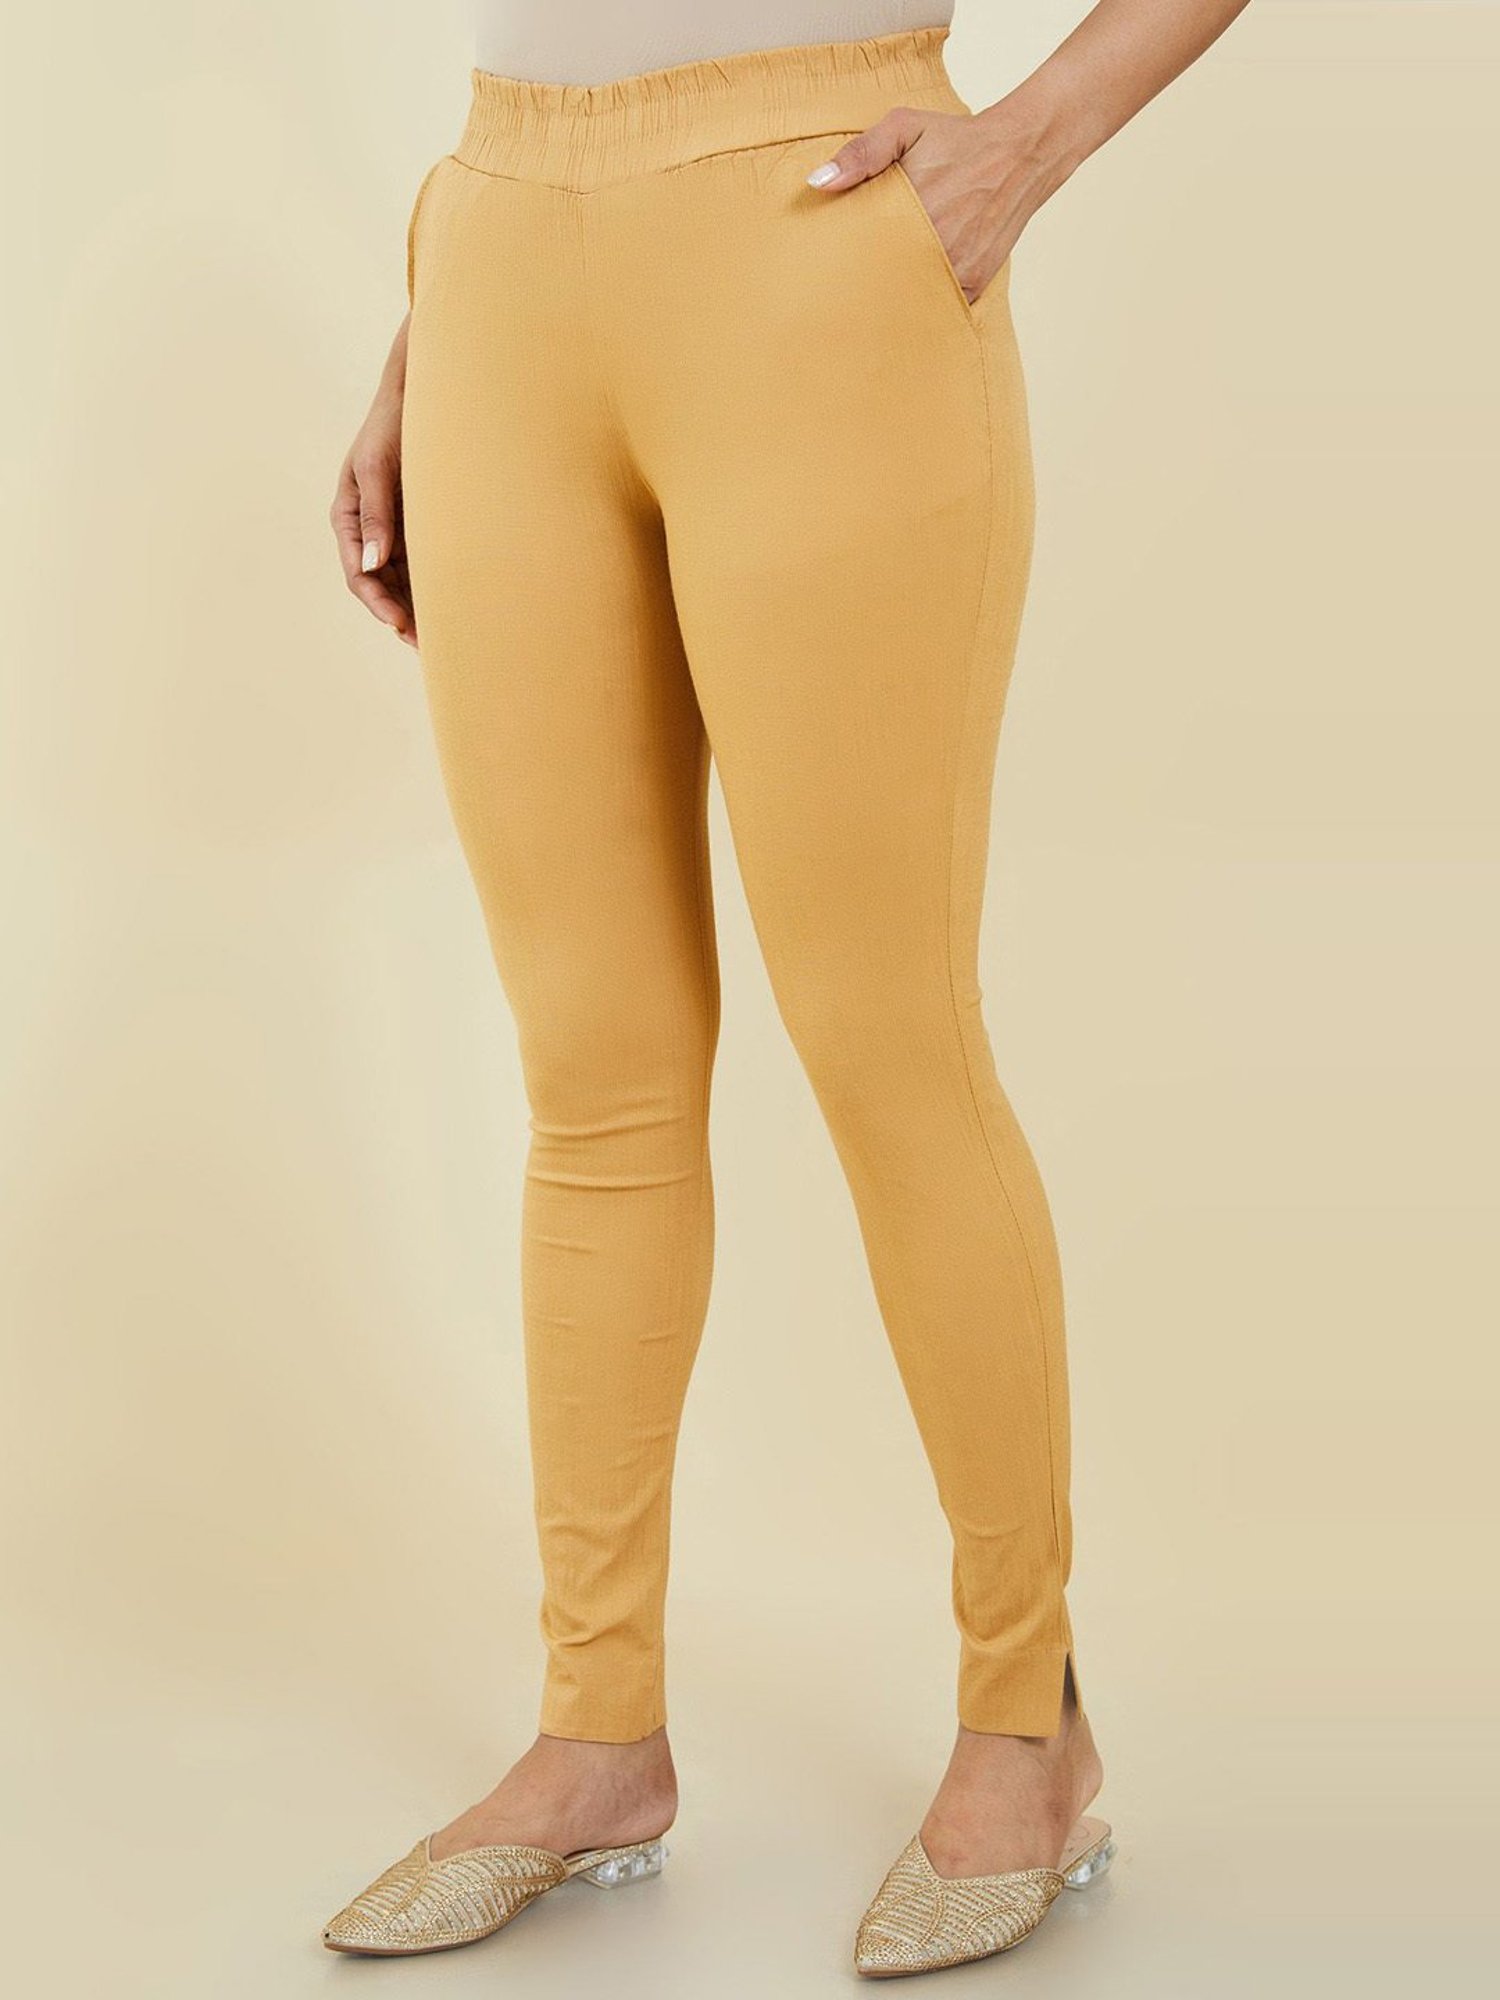 Lyra Golden Cotton Full Length Leggings